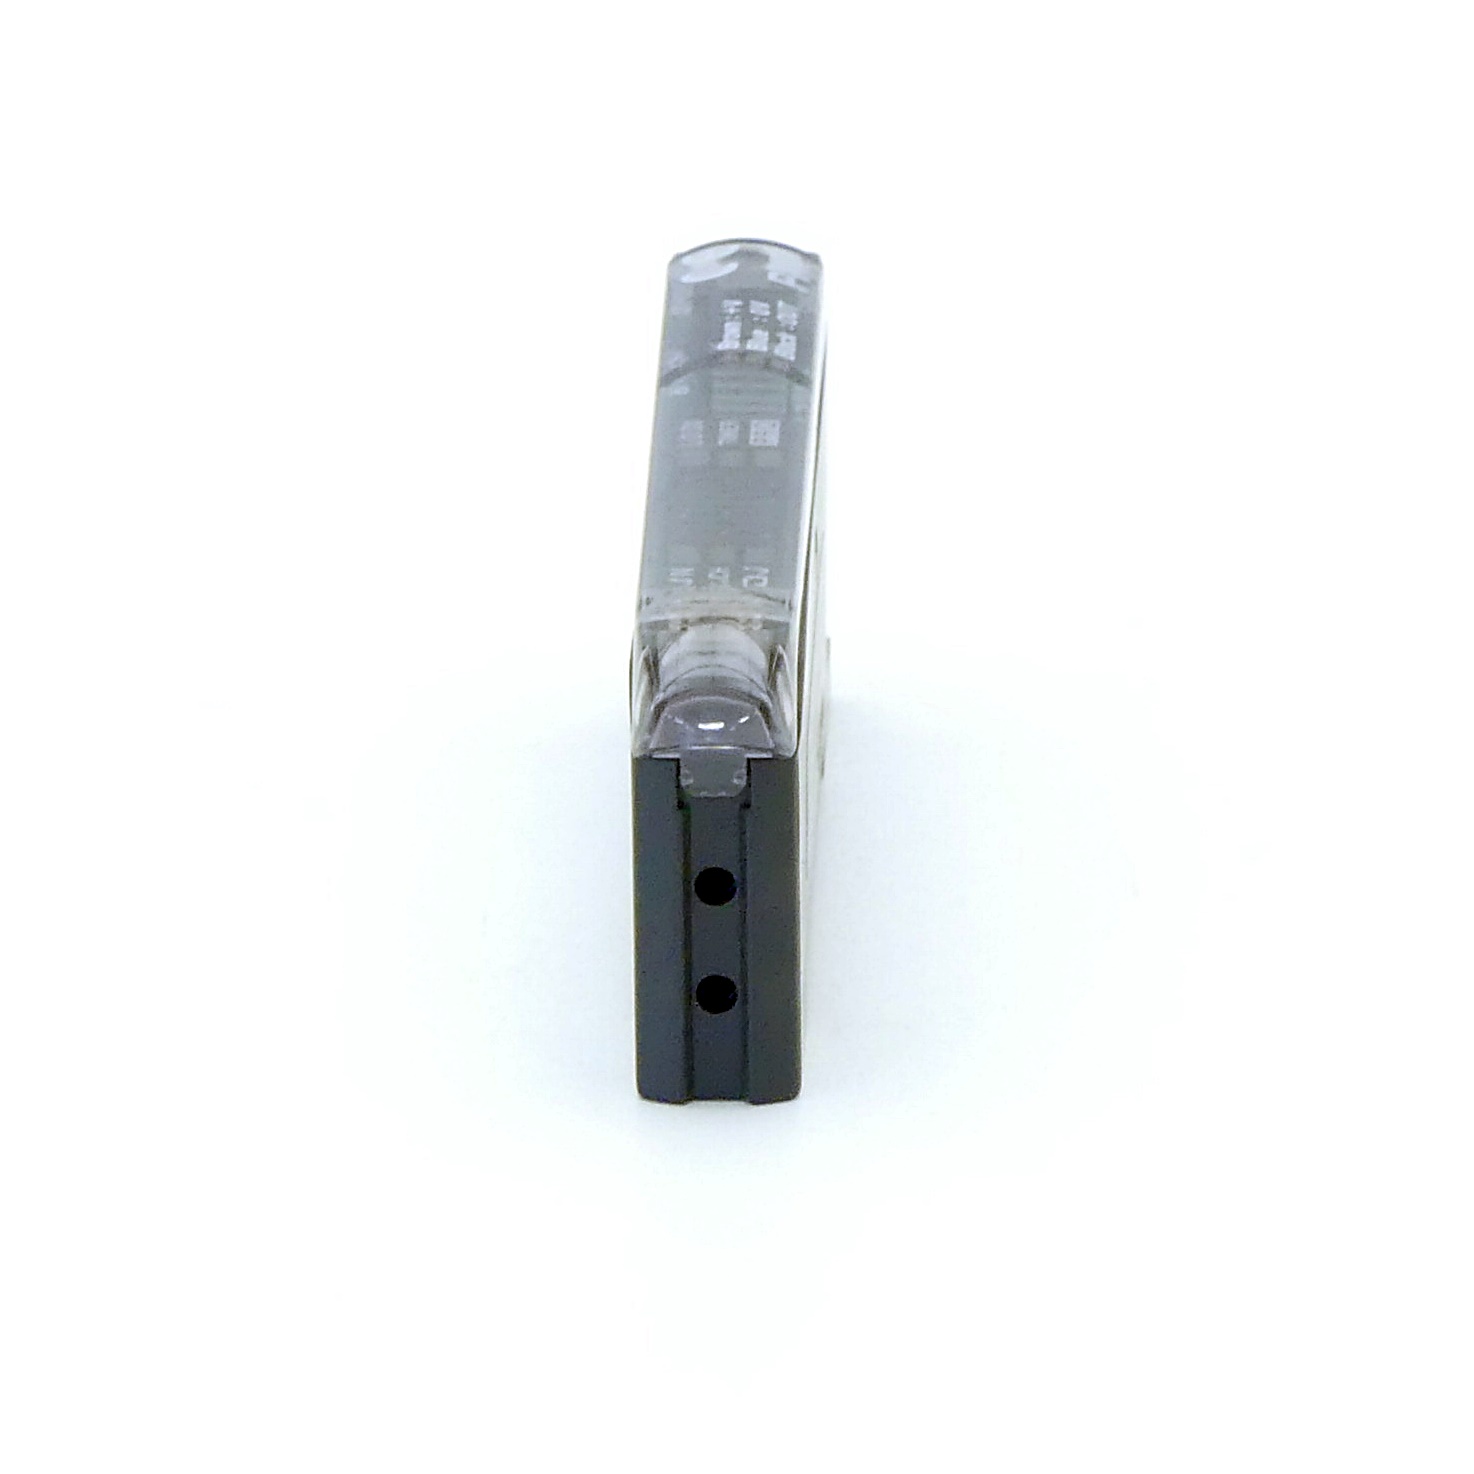 Faseroptischer Sensor OL 10 03 40 